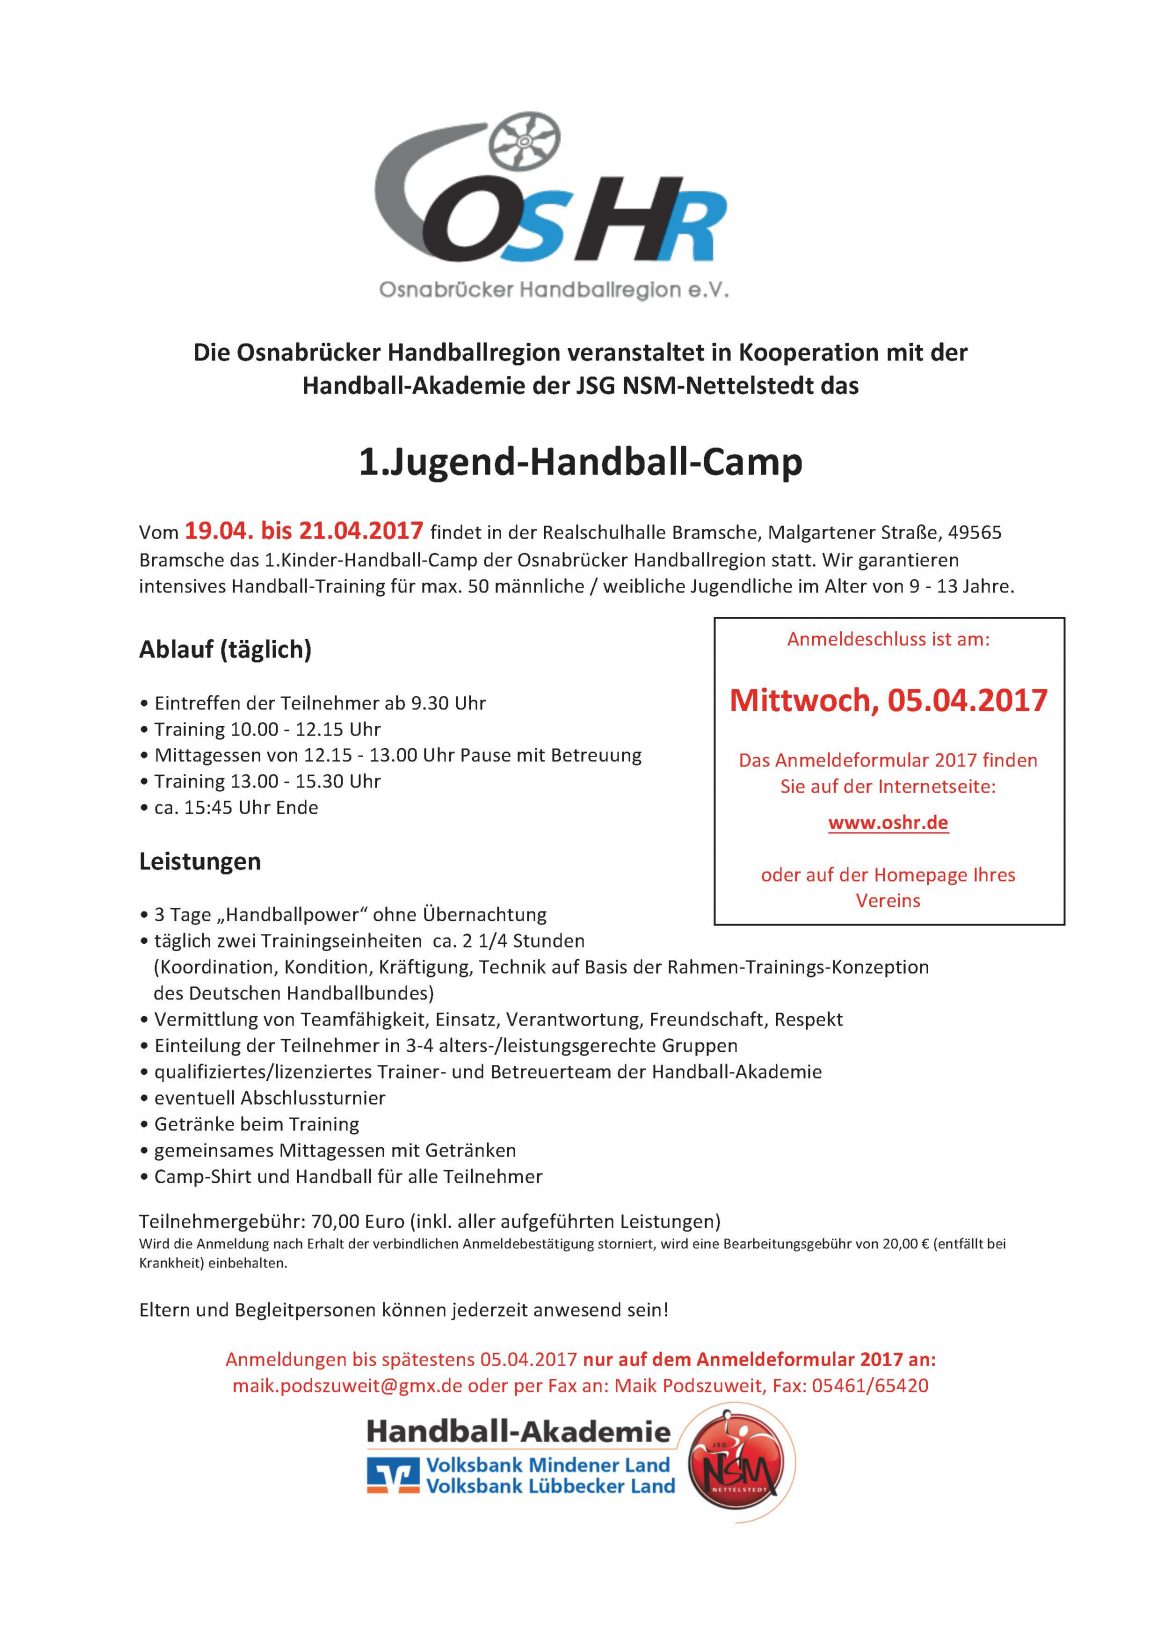 1.Handball-Camp der Osnabrücker Handballregion e.V.